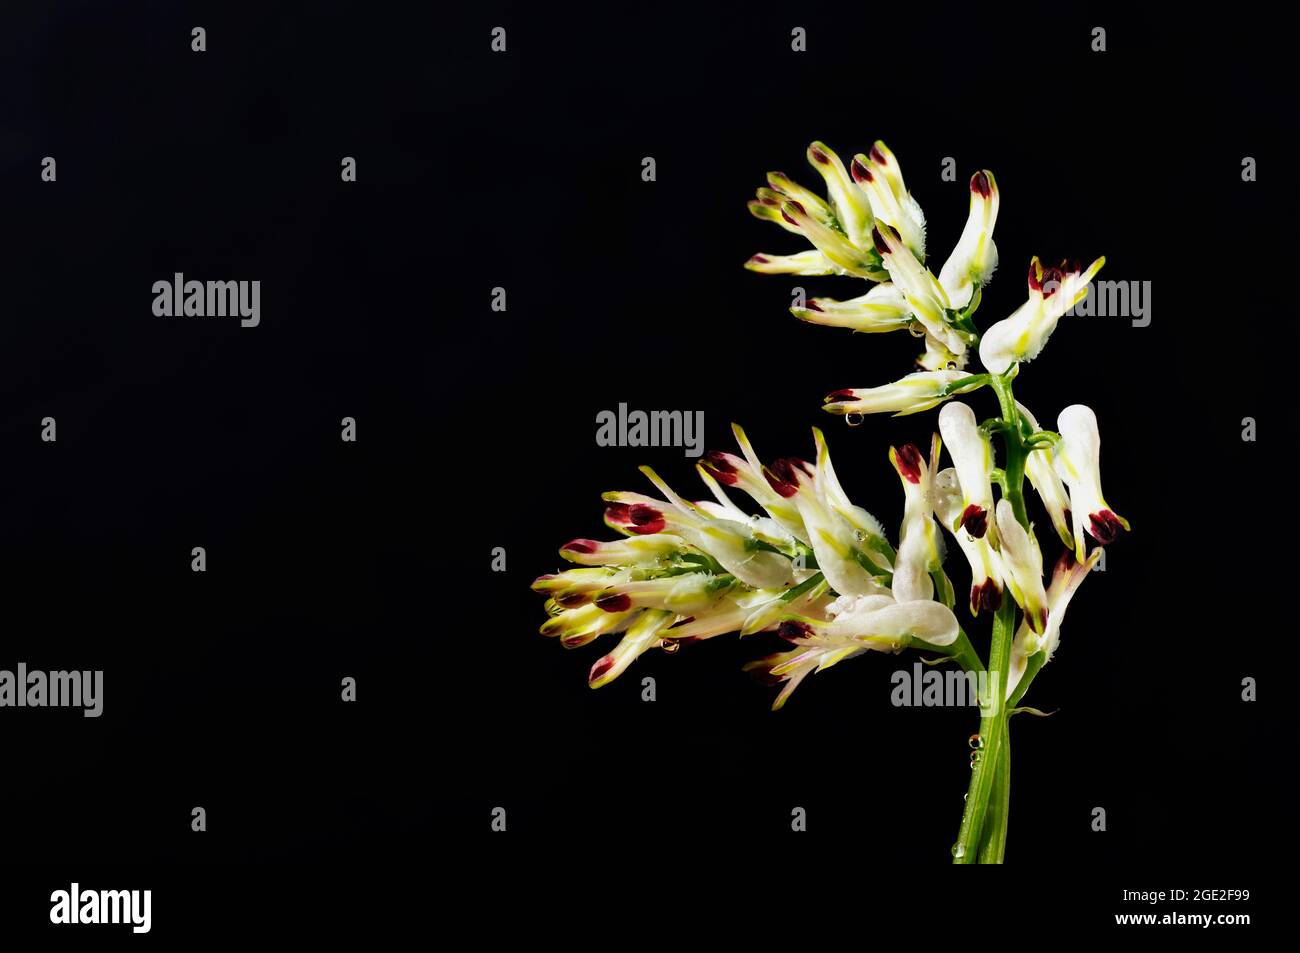 Fleur blanche de fumante commune -fumaria officinalis - sur fond sombre , fleur spontanée au printemps Banque D'Images